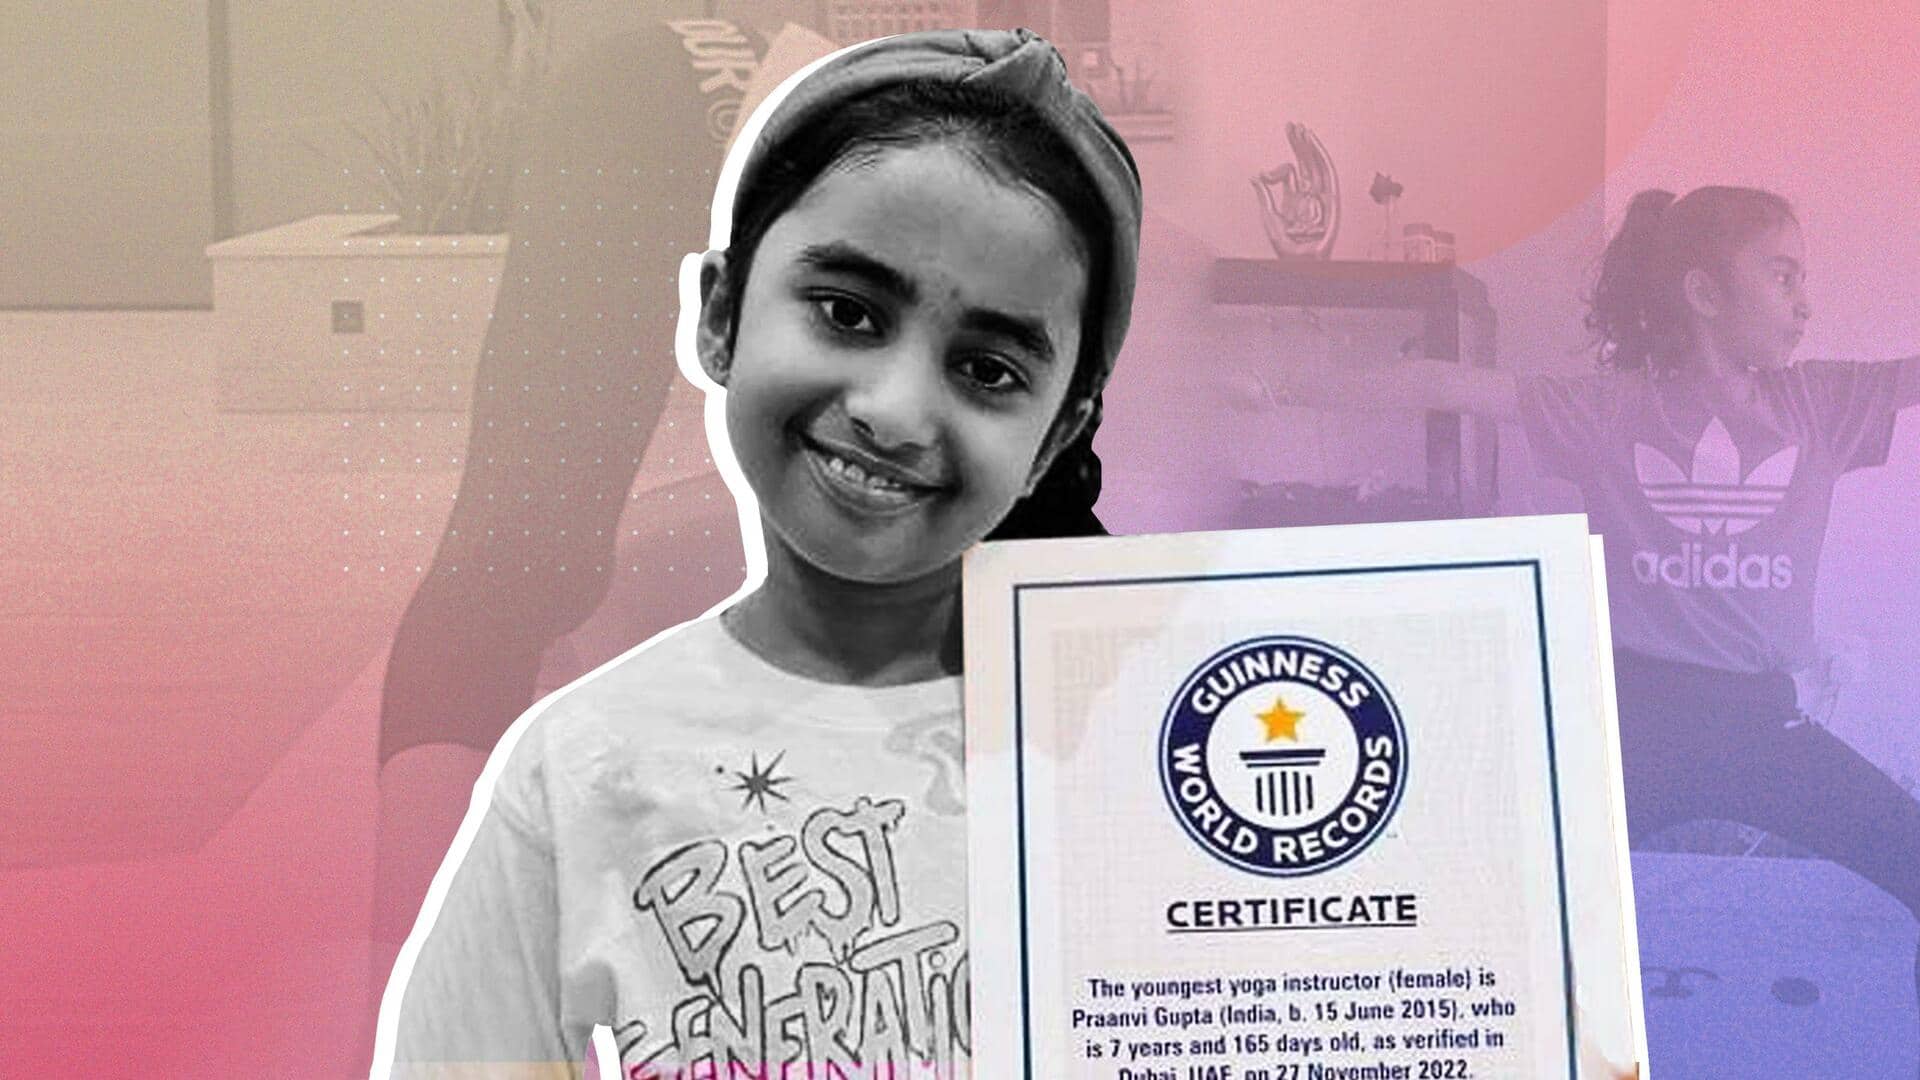 7 साल की भारतीय बच्ची बनी 'दुनिया की सबसे कम उम्र की योग प्रशिक्षक', बनाया रिकॉर्ड